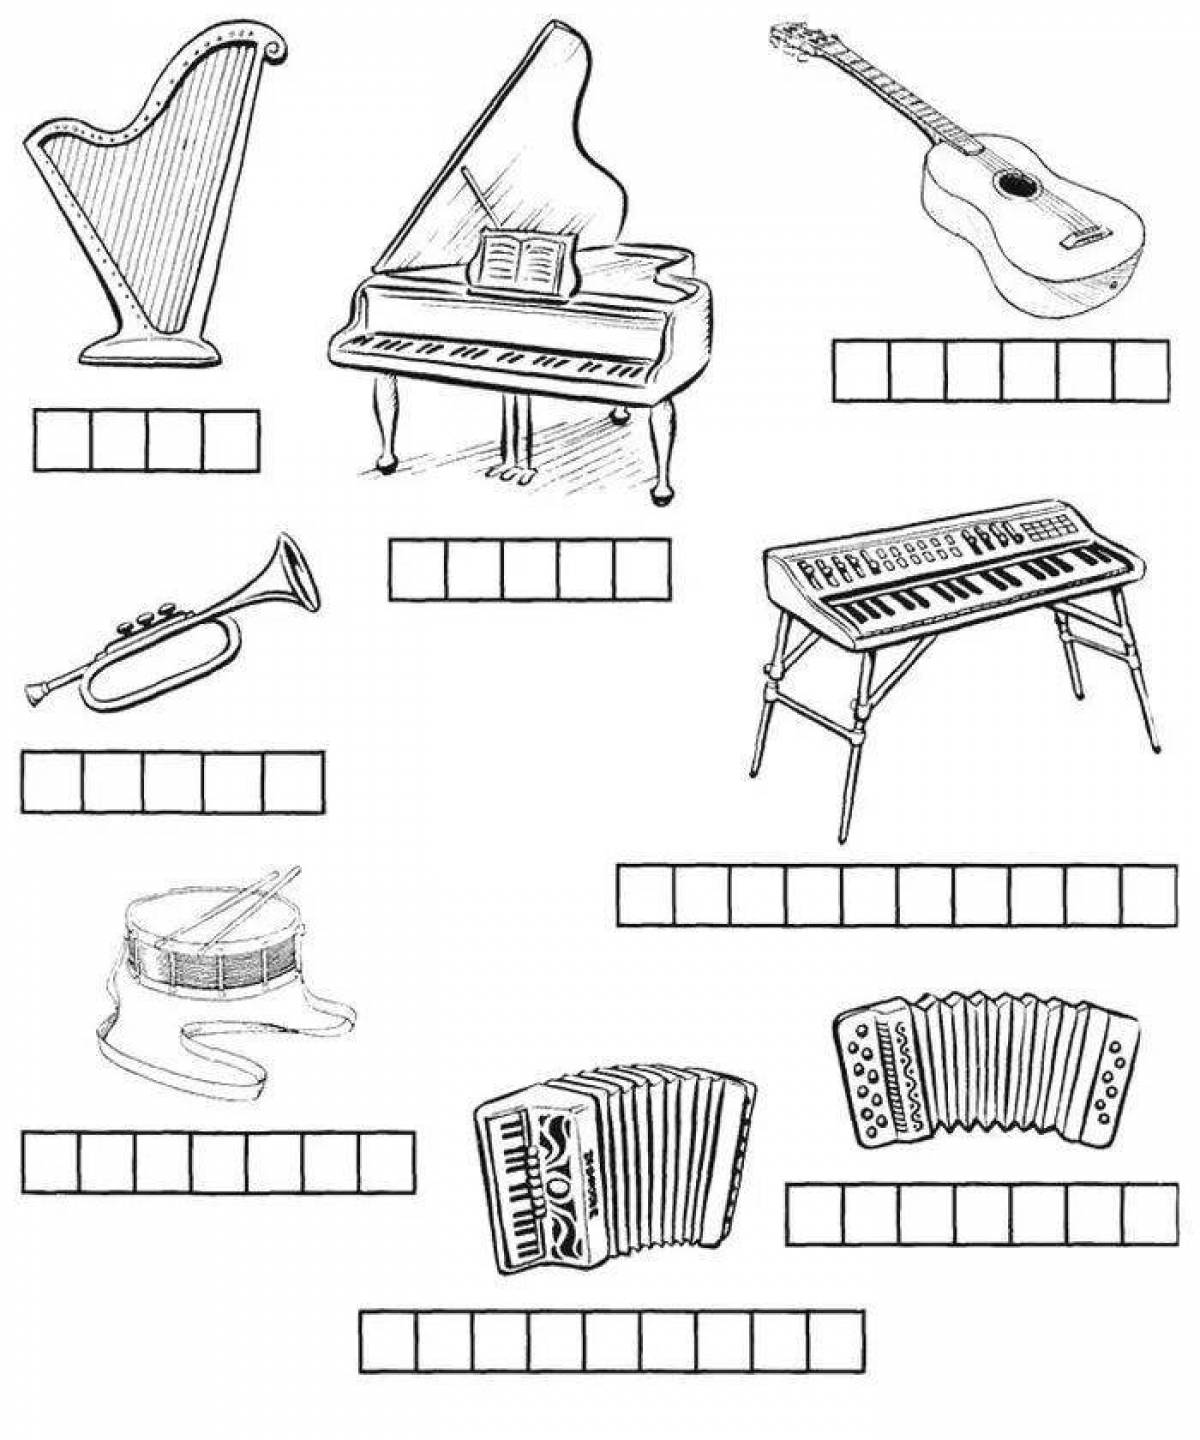 Музыкальные инструменты задачи. Музыкальные задания для дошкольников. Музыкальные инструменты задания для детей. Музыкальные инструменты раскраска. Музыкальные инструменты задания для дошкольников.